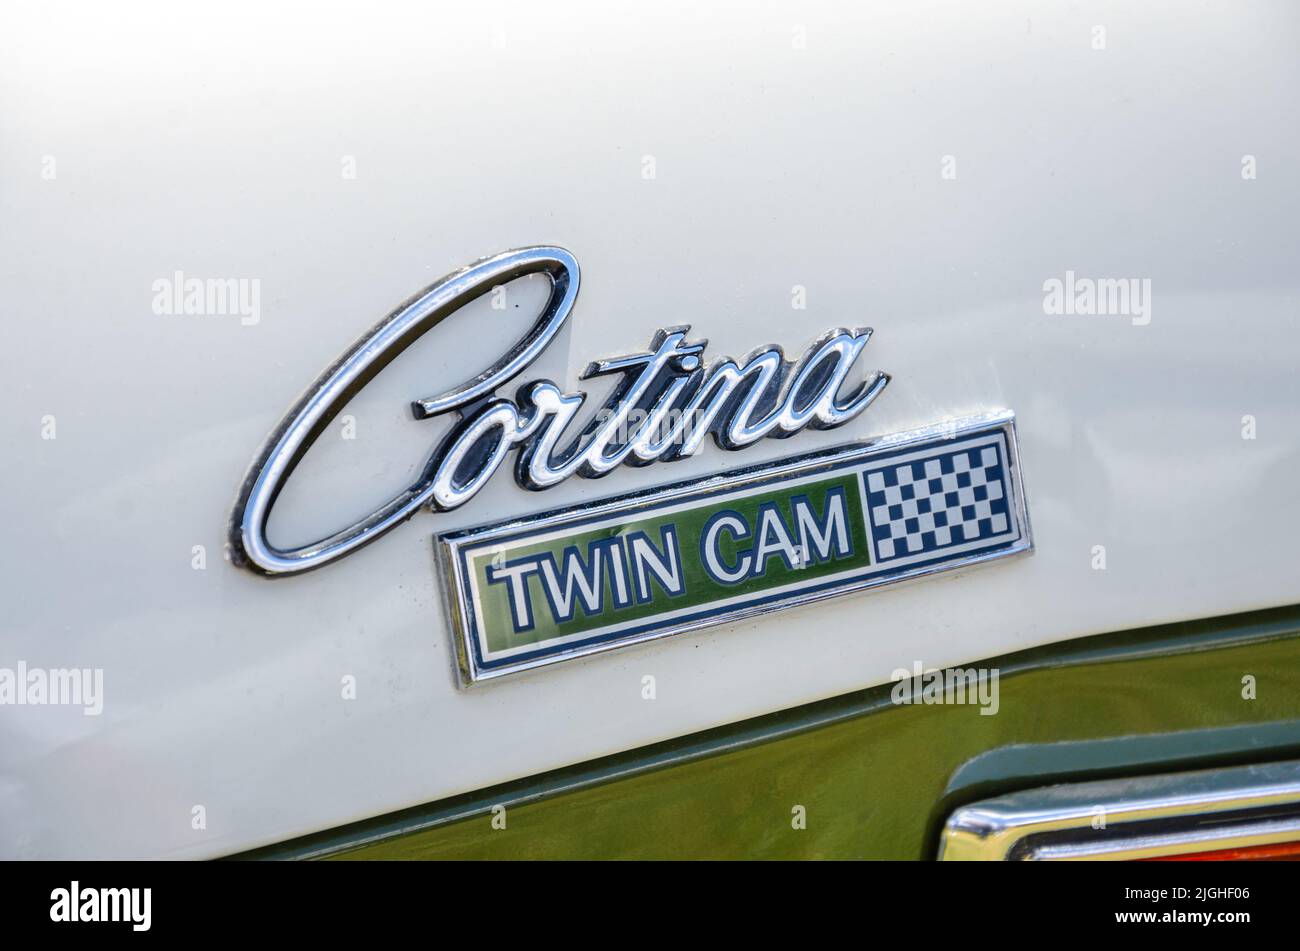 Nahaufnahme auf der Rückseite eines Ford Cortina aus dem Jahr 1968, die darauf verweise, dass dieses Auto eine Doppelkamera hatte. Gesehen hier auf der „The „The The The The“ Motor Show in Reading, Großbritannien Stockfoto